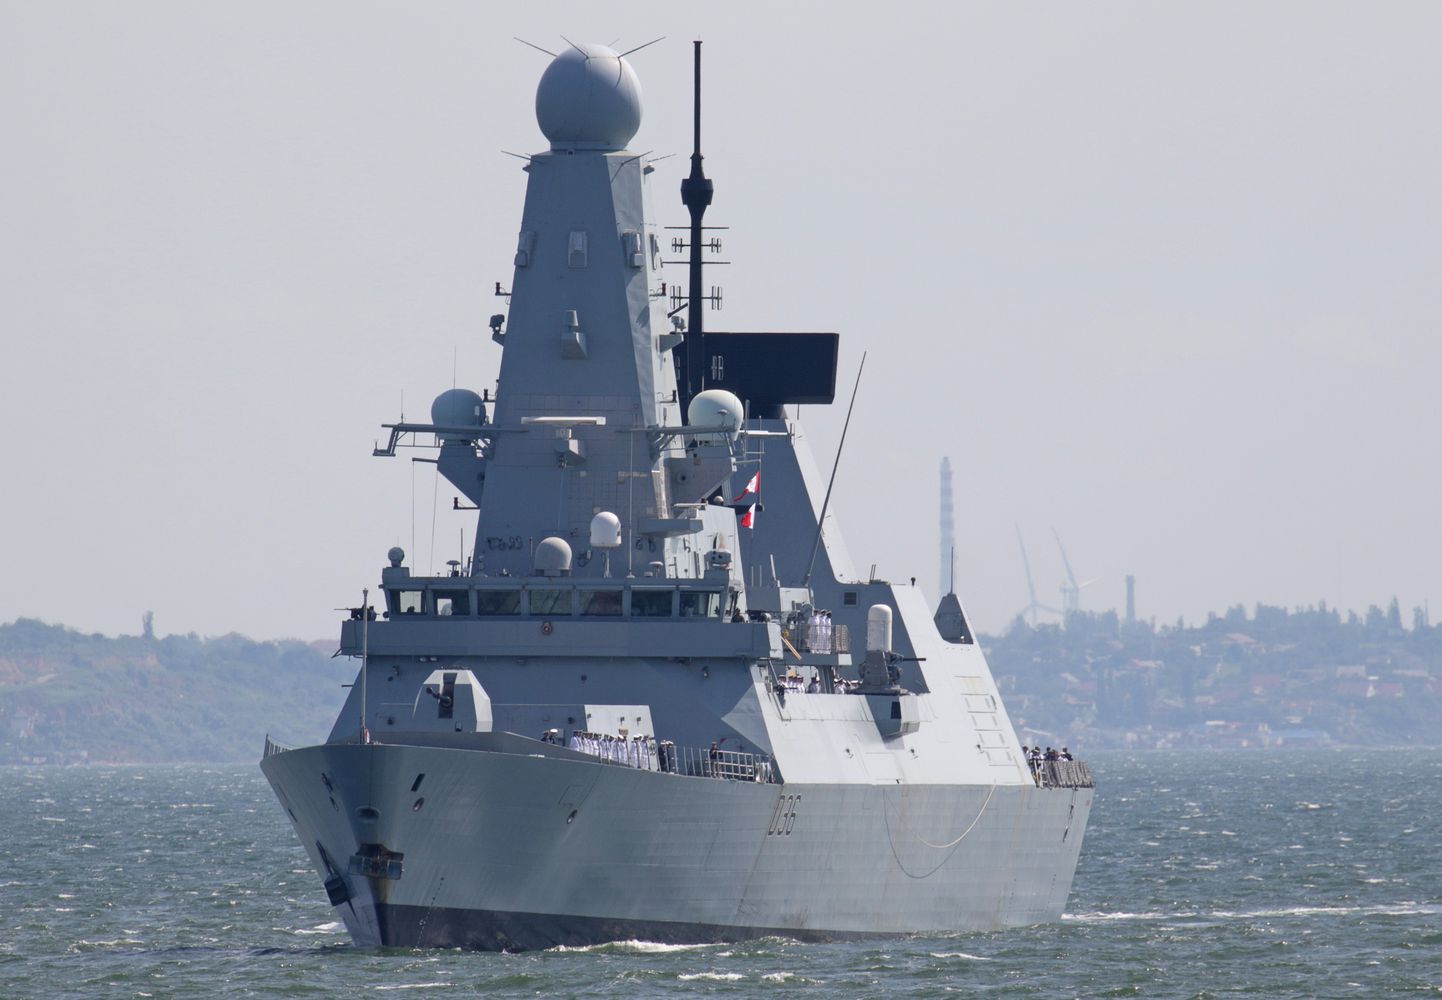 Briti sõjalaev HMS Defender saabumas Odessasse 18. juunil 2021.